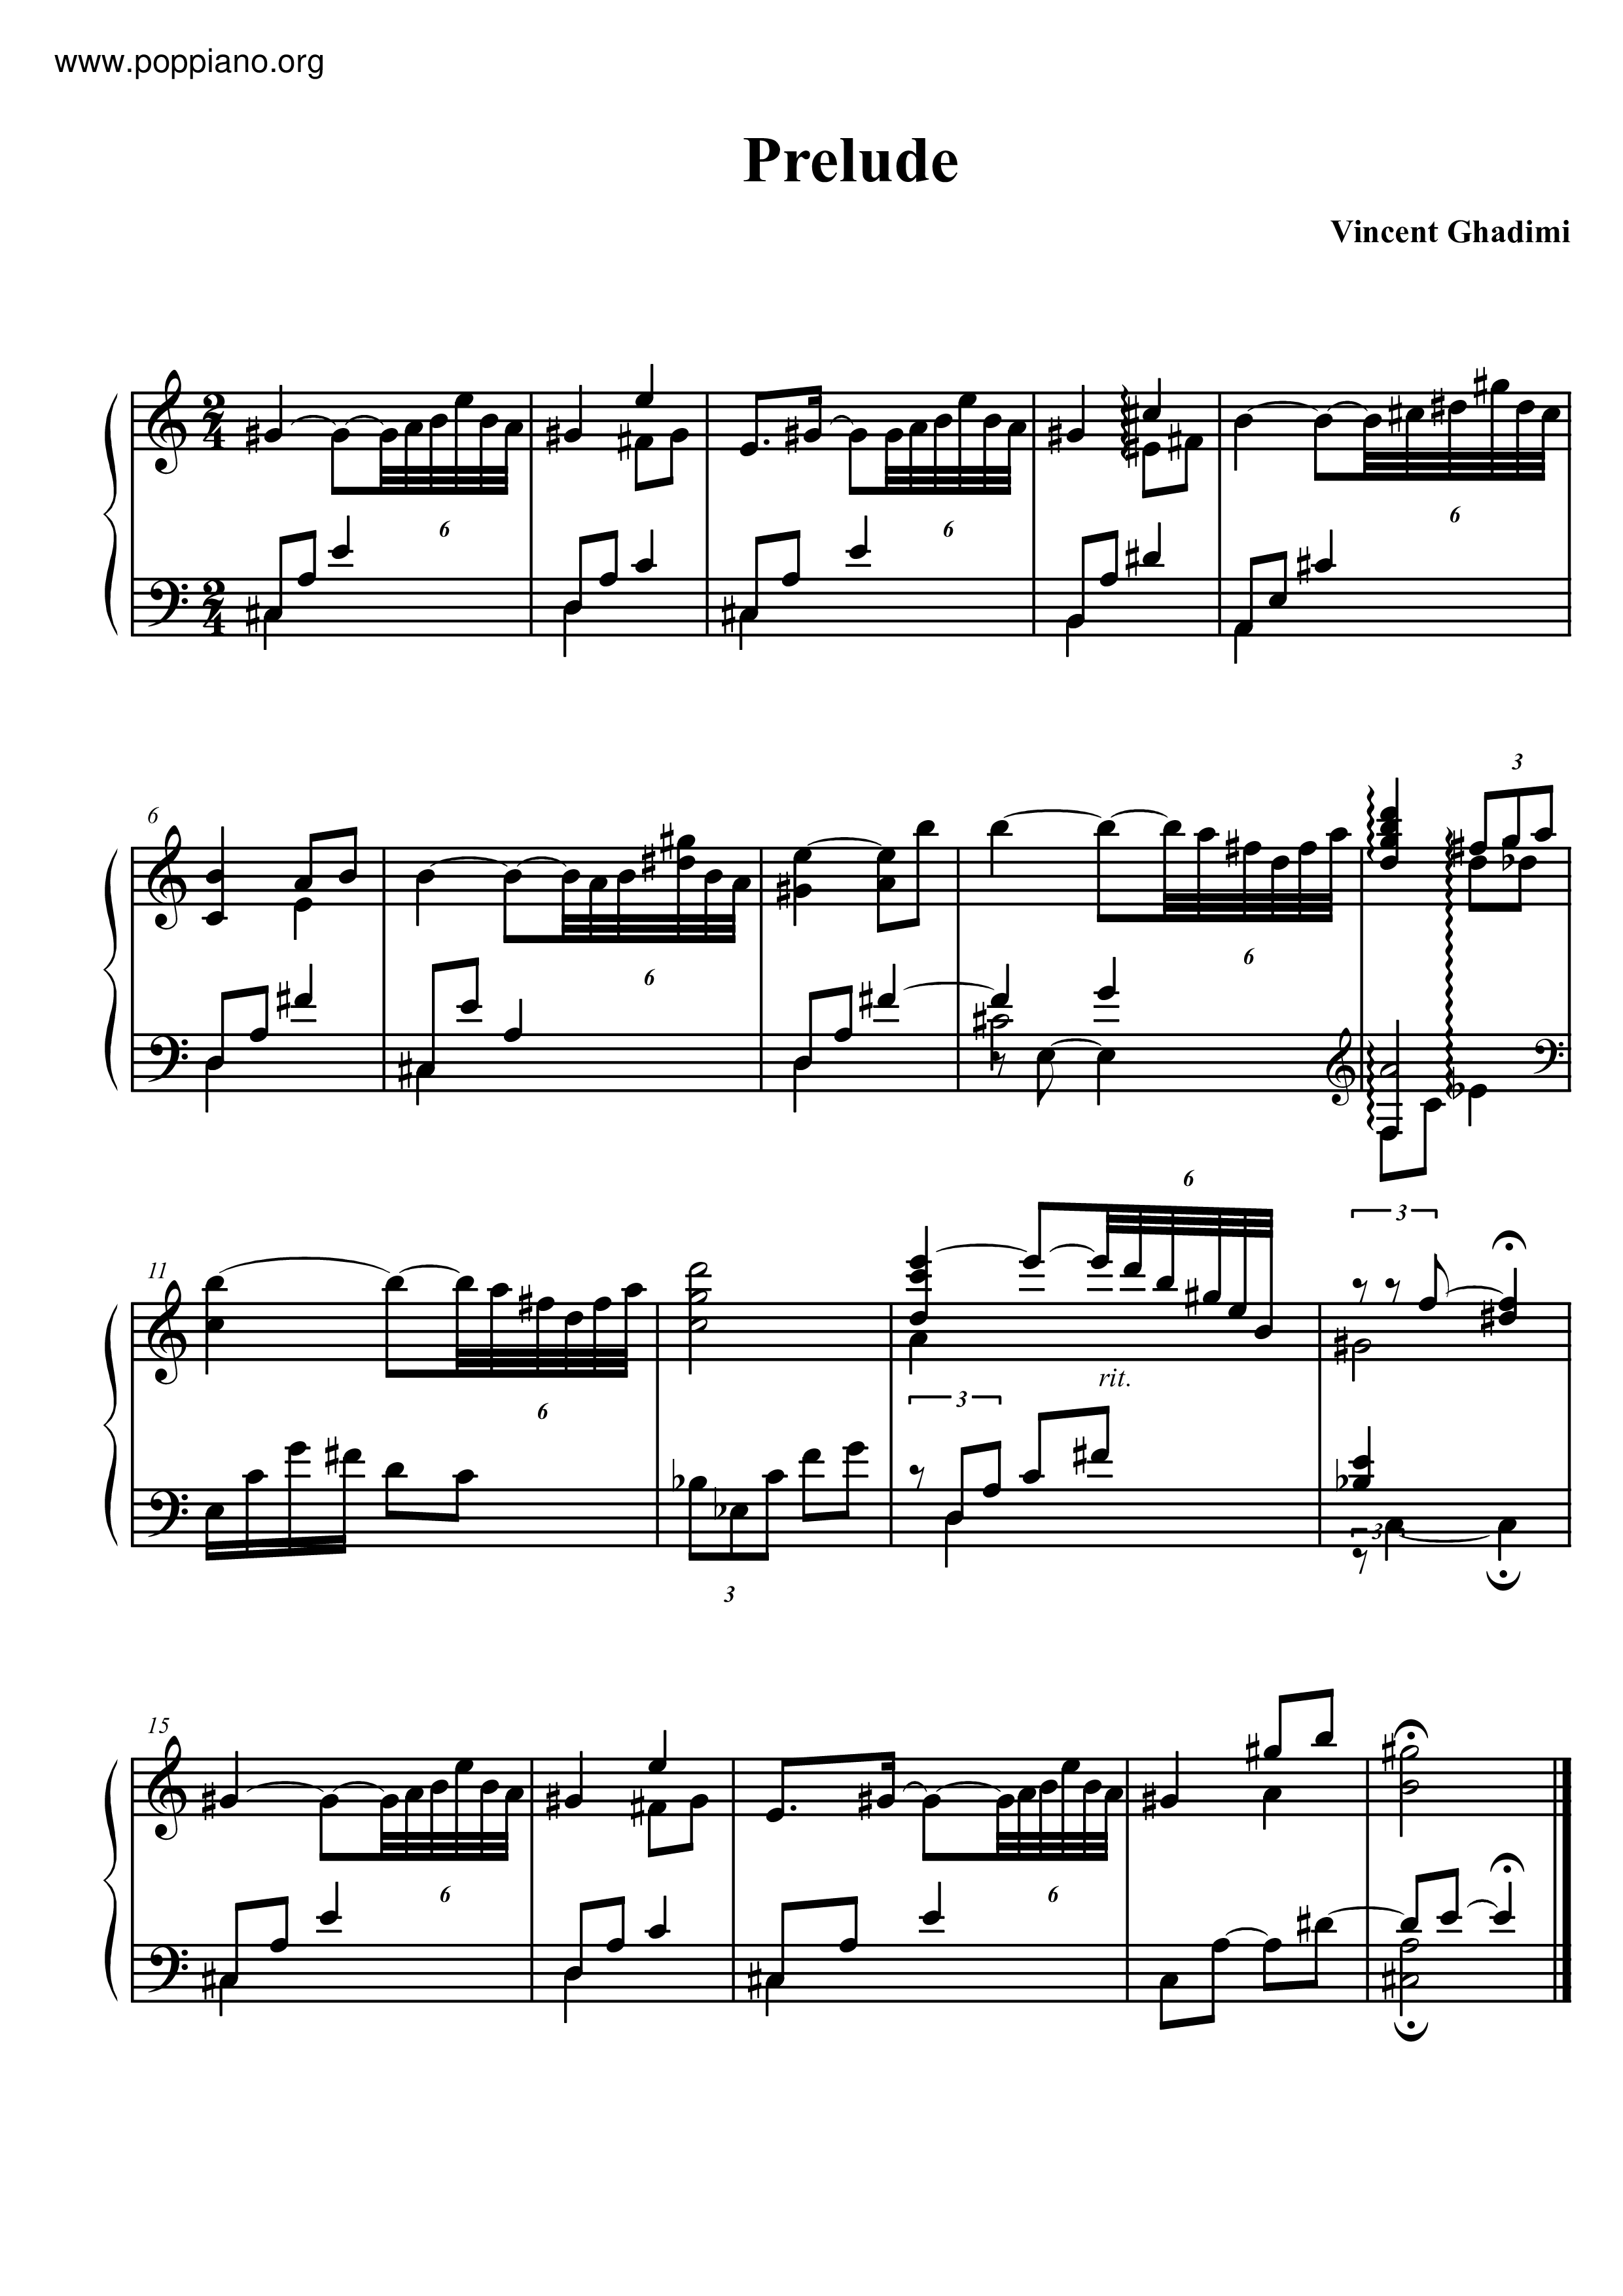 Prelude Score